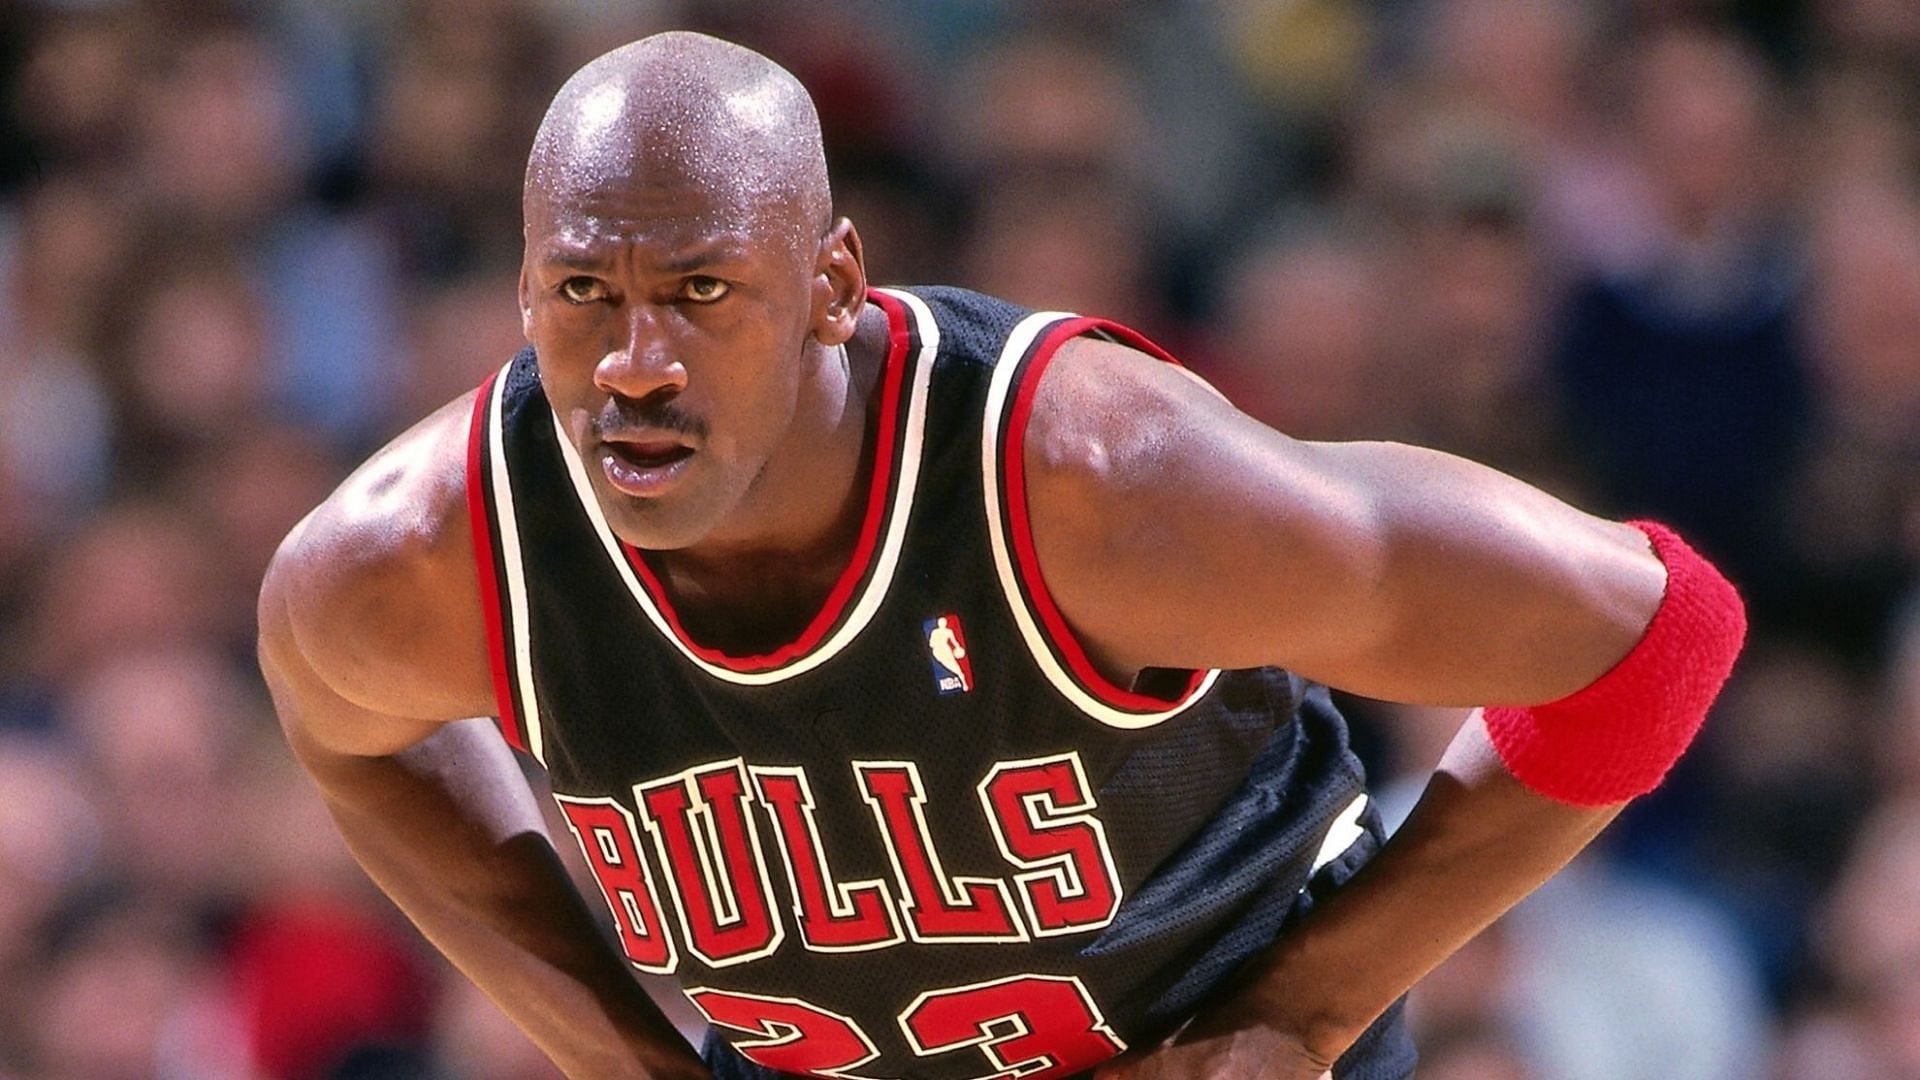 Former Chicago Bulls superstar Michael Jordan